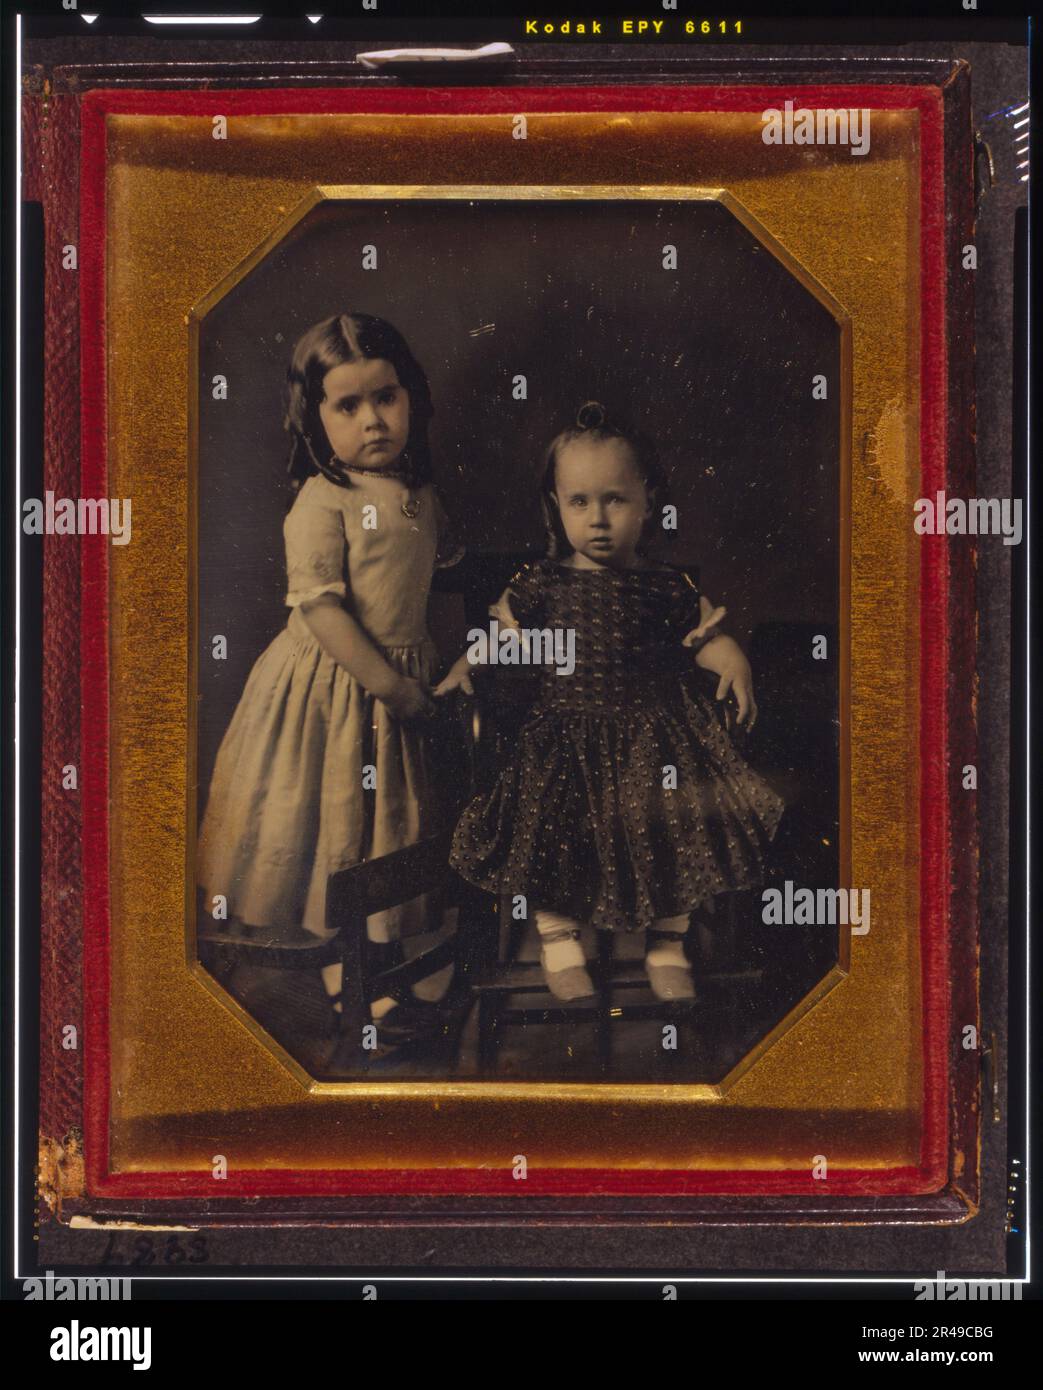 ELISA et John McAllister, enfants de W.Y. McAllister, Elisa debout sur la chaise, John assis en chaise haute, 1849, 23 juillet. Eliza Young McAllister (1845-1932) et John McAllister (1846-1863). Banque D'Images